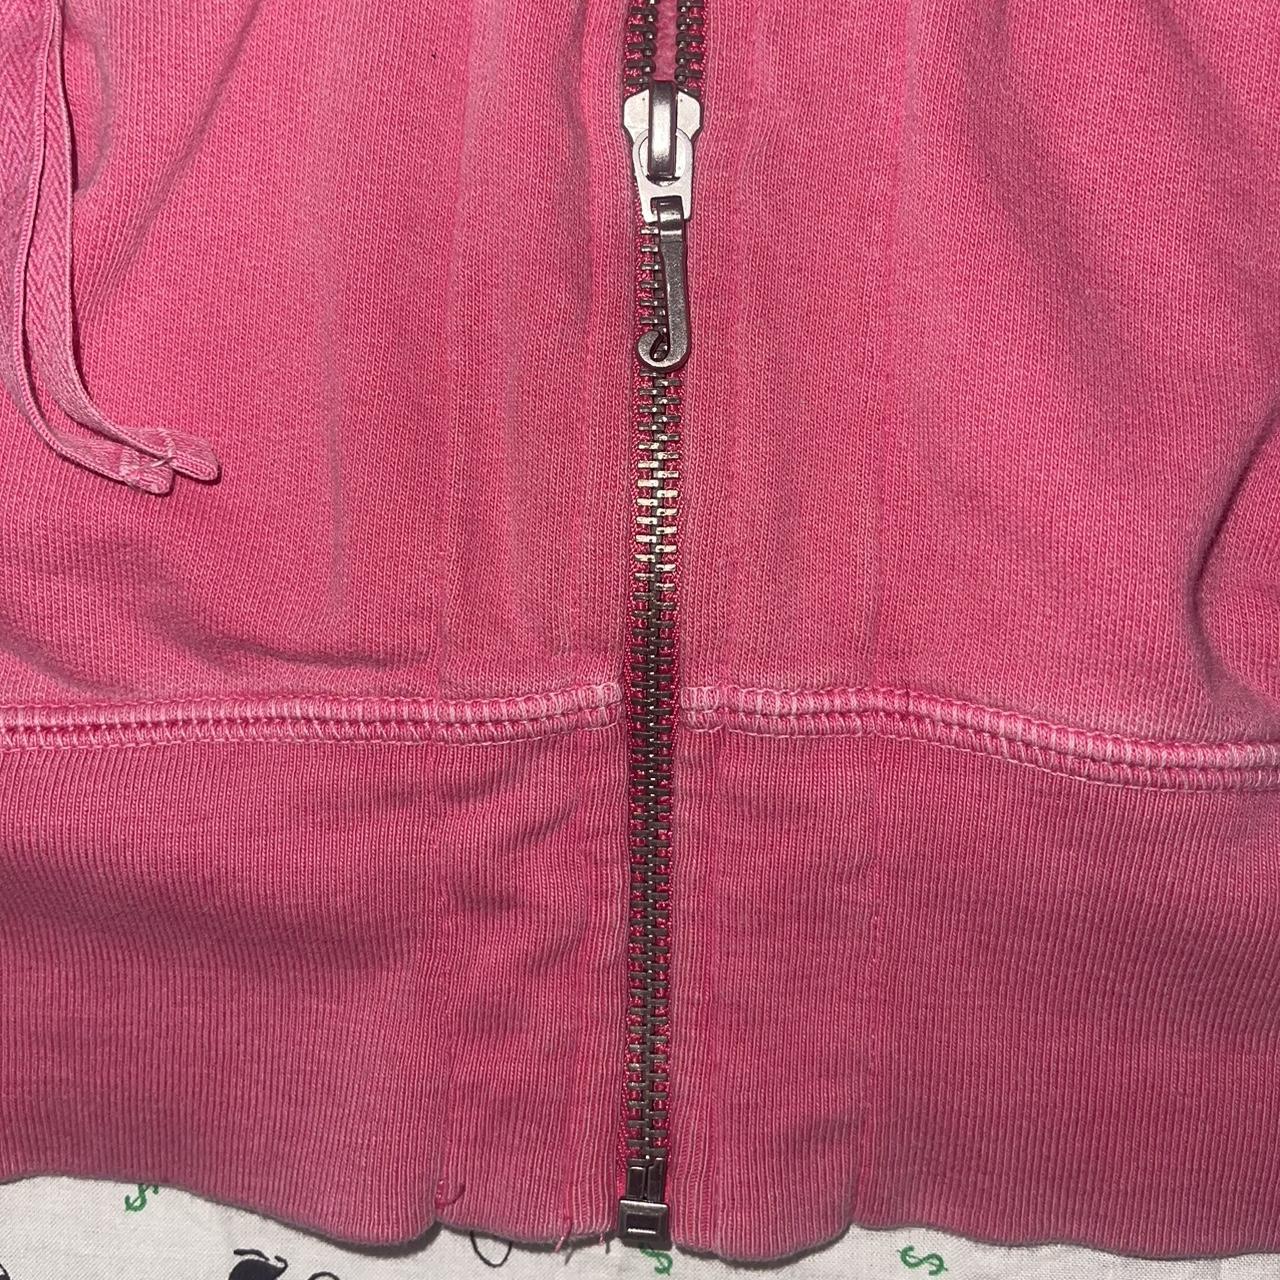 Juicy Couture Women's Pink Hoodie | Depop